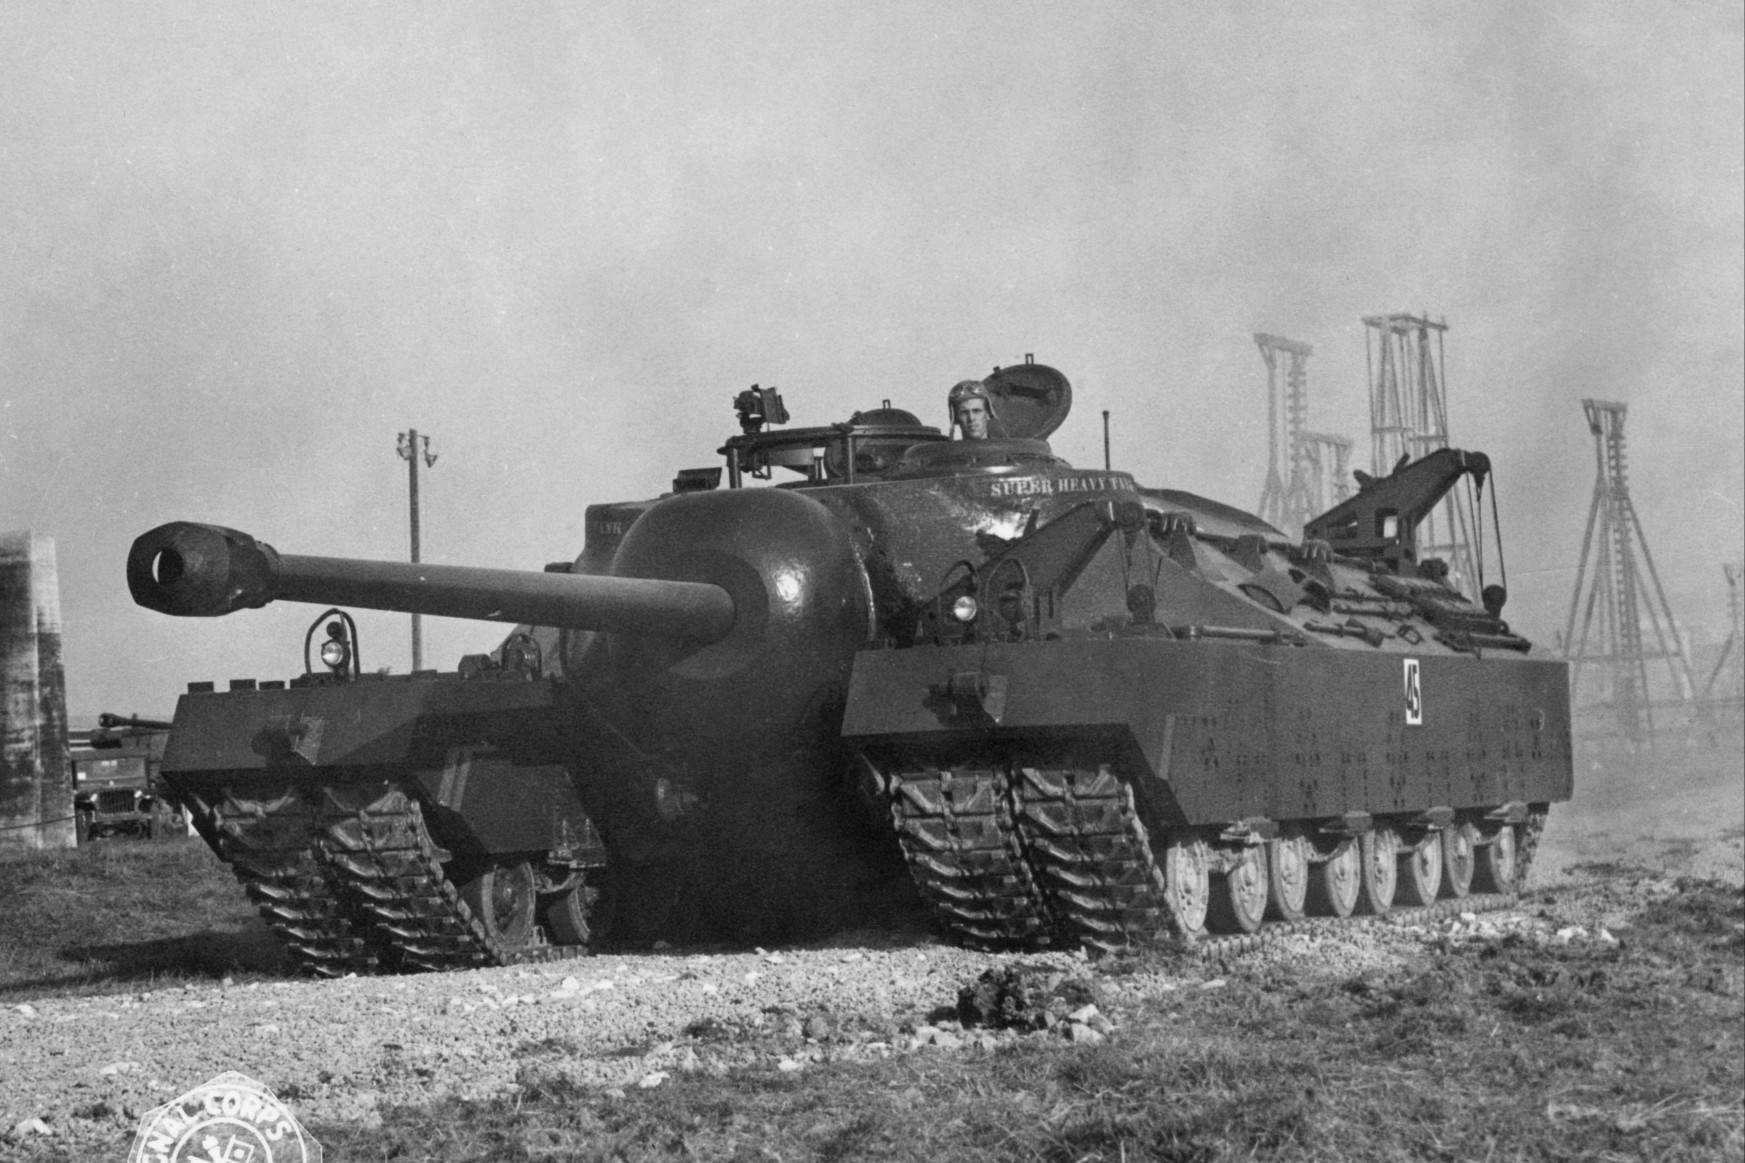 A 86 tonnás amerikai tankszörny, aminek 27 évre nyoma veszett